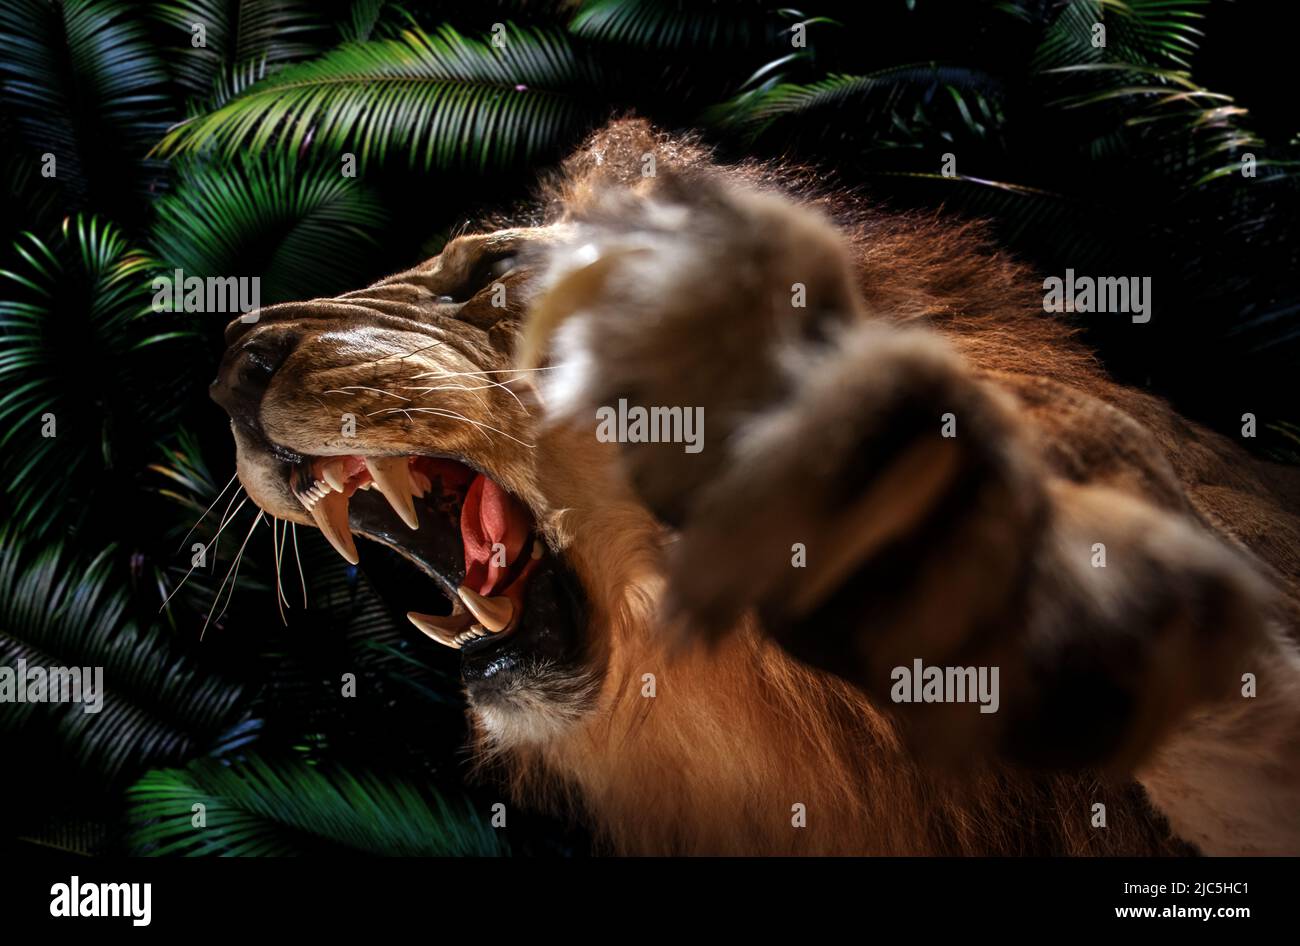 Un portrait d'un lion rugissant, jungle sombre en arrière-plan Banque D'Images